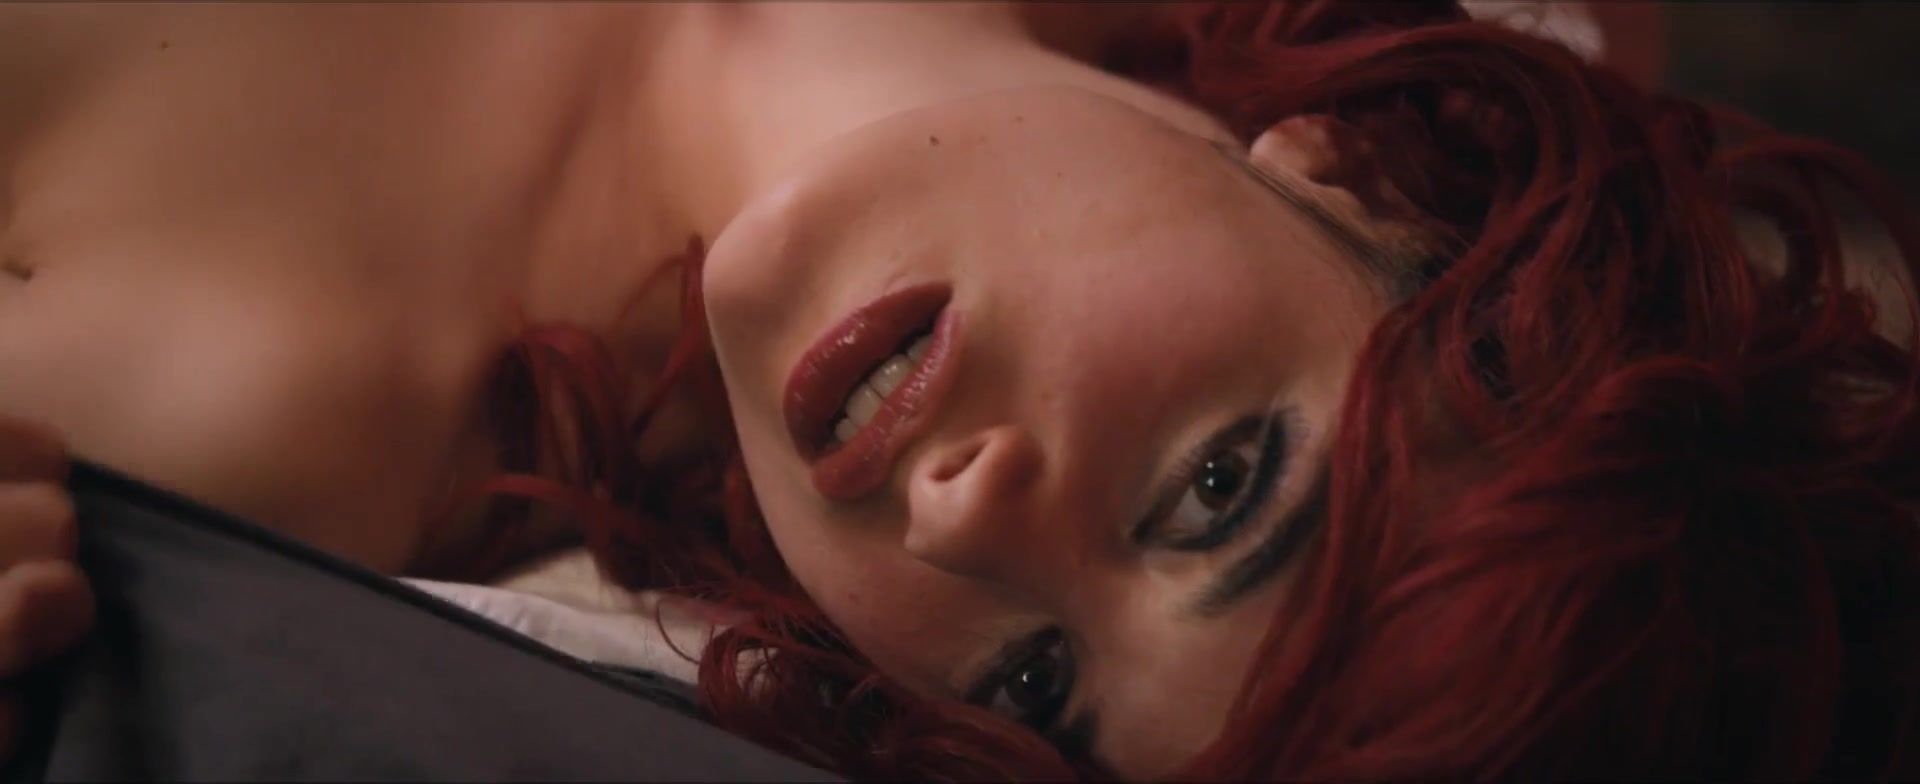 Free Blow Job Porn Camille Claris naked - TOM X - Trailer (2018) GigPorno - 1